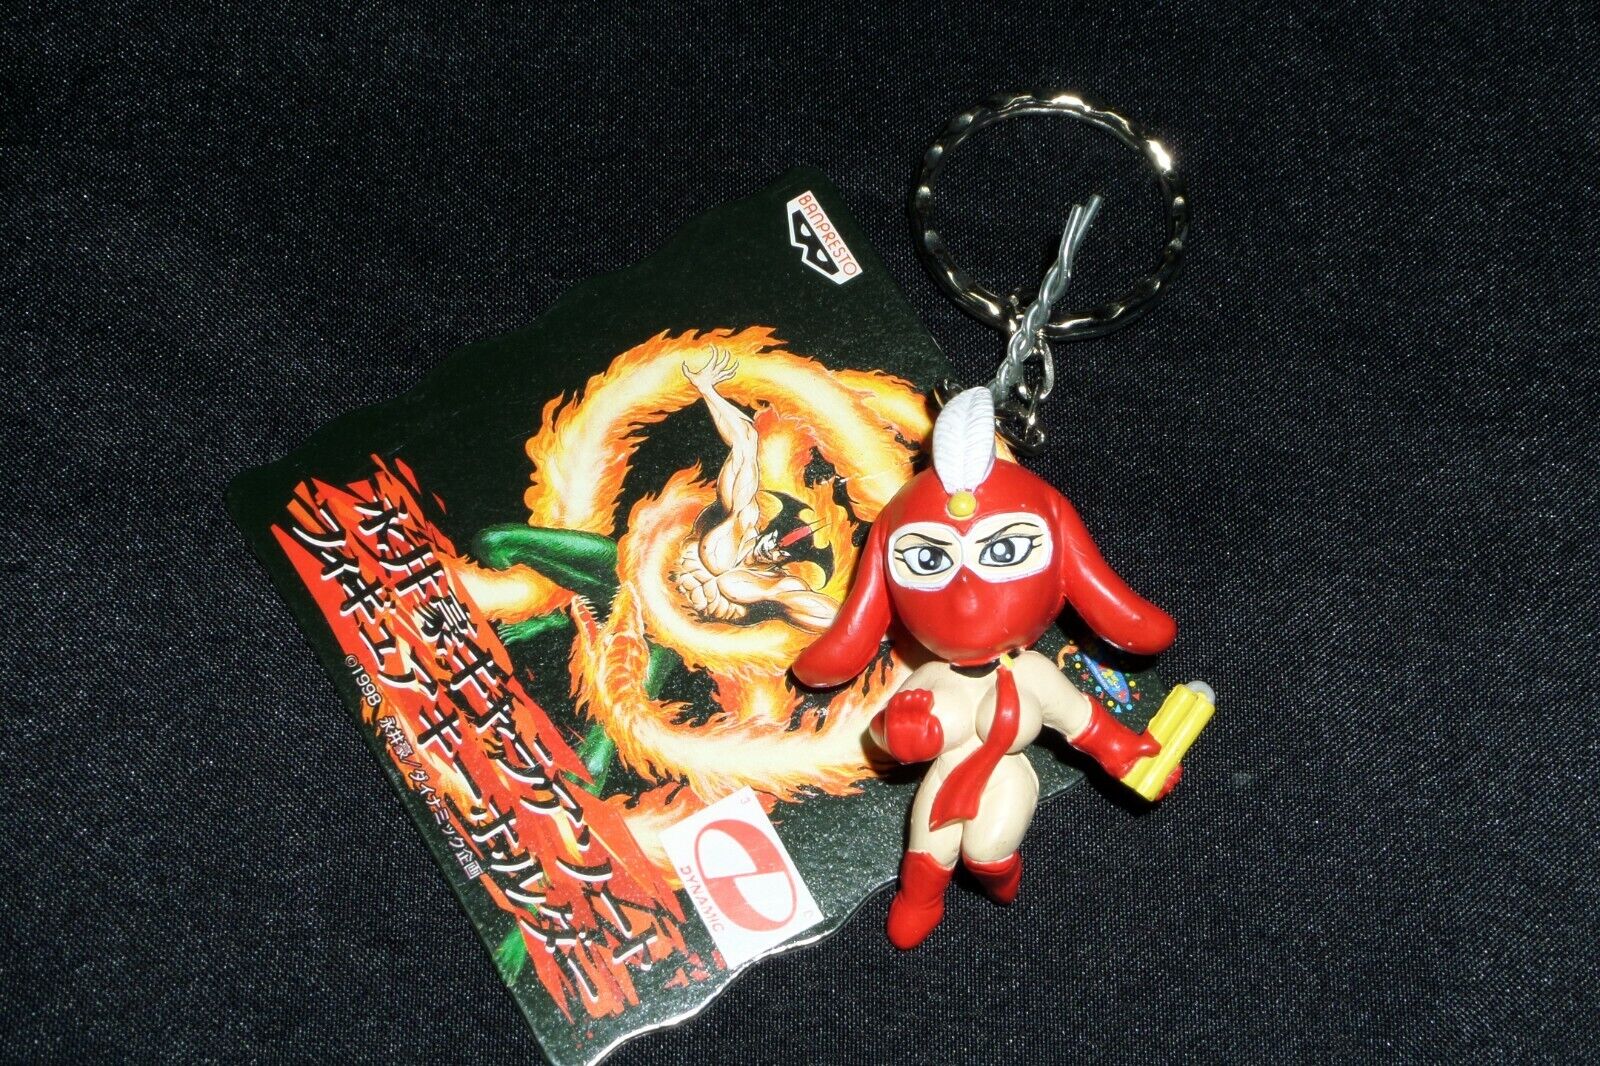 Banpresto 1998 Go Nagai Kekko Kamen Keychain Figure Japan Anime 